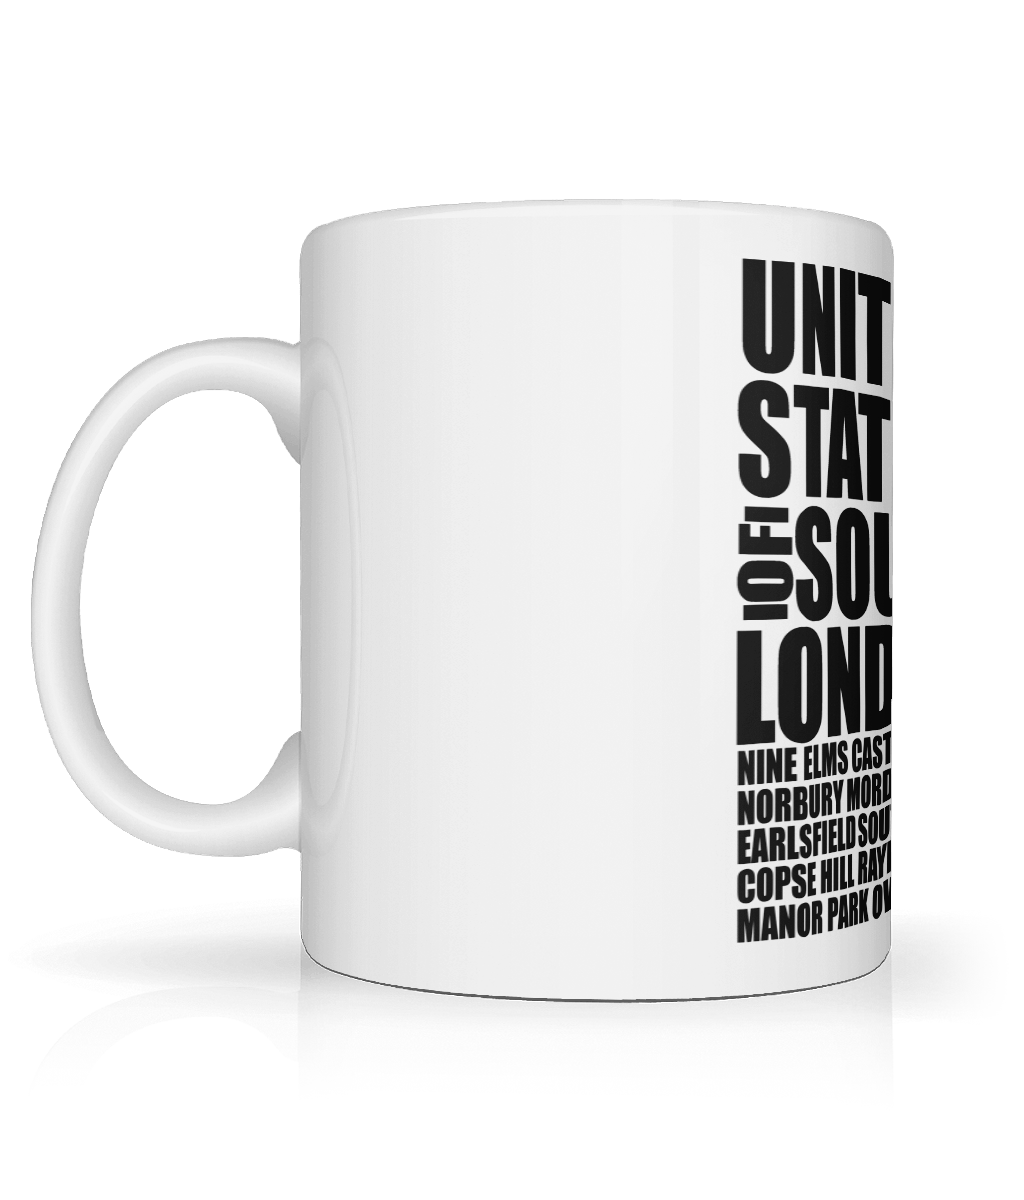 United States of South West London Mug